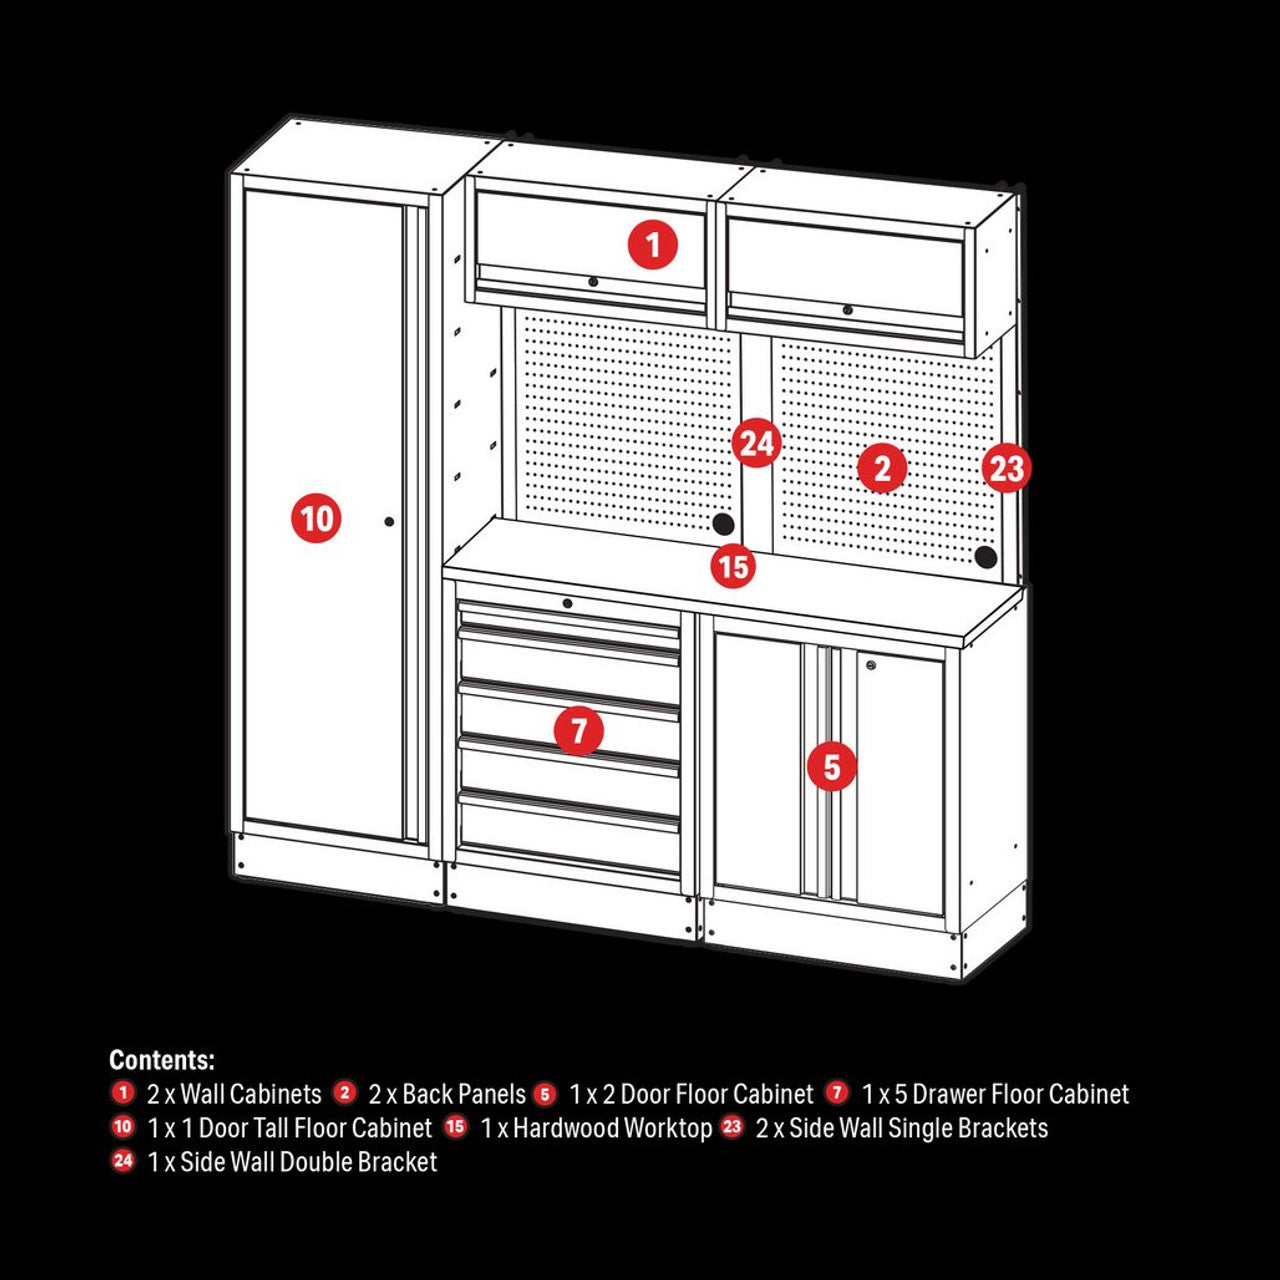 Draper 04488 Bunker Modular Storage Combo with Hardwood Worktop (11 Piece)